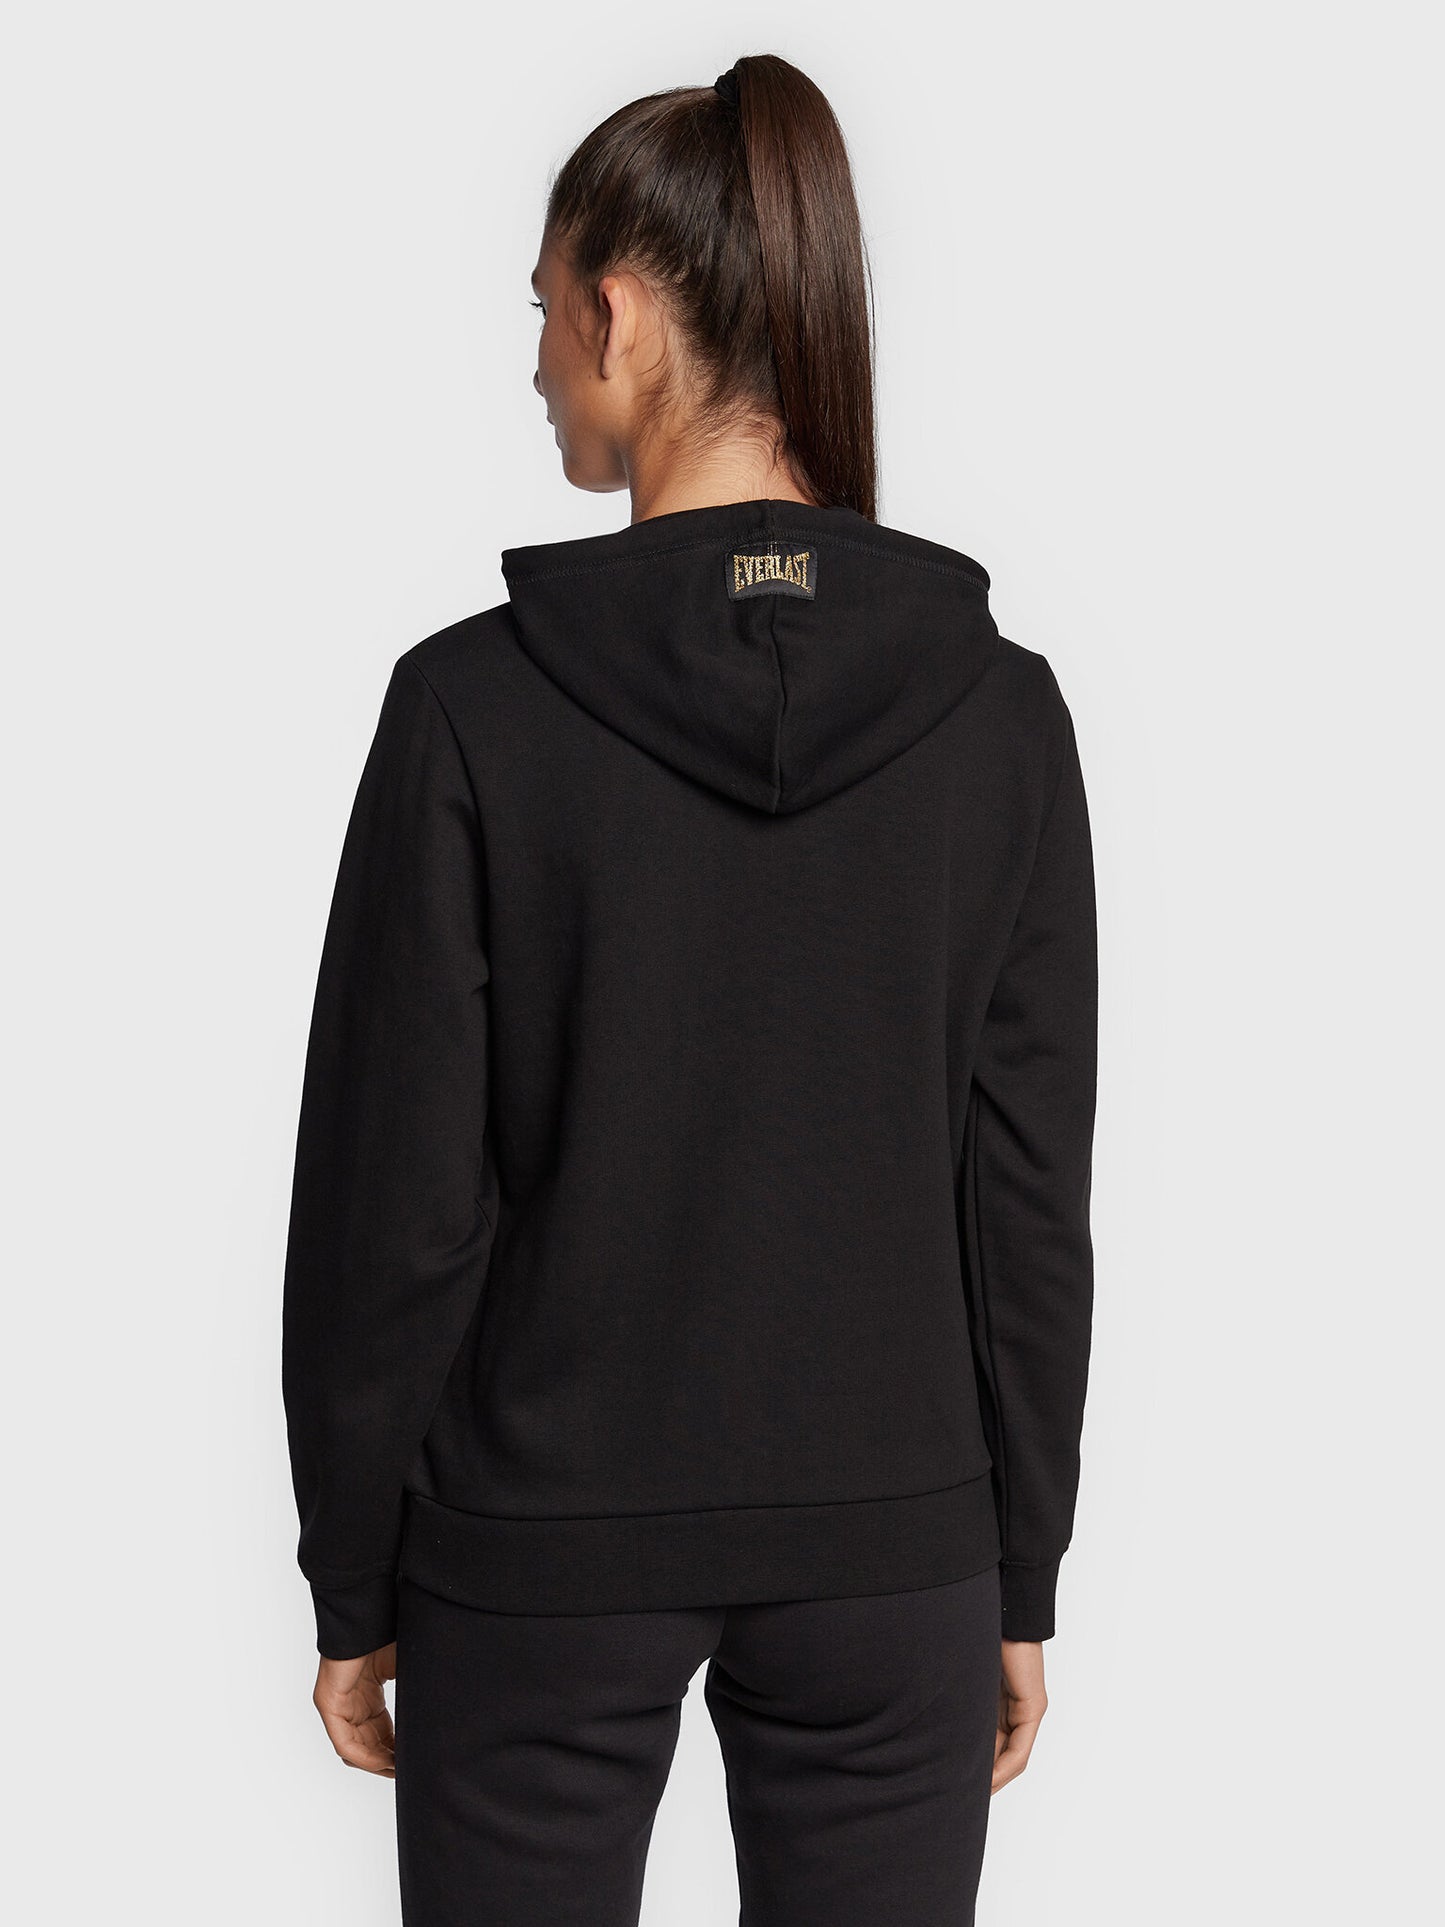 Sweatshirt à Capuche Everlast Taylor W2 - Pour Femmes - Noir/Or